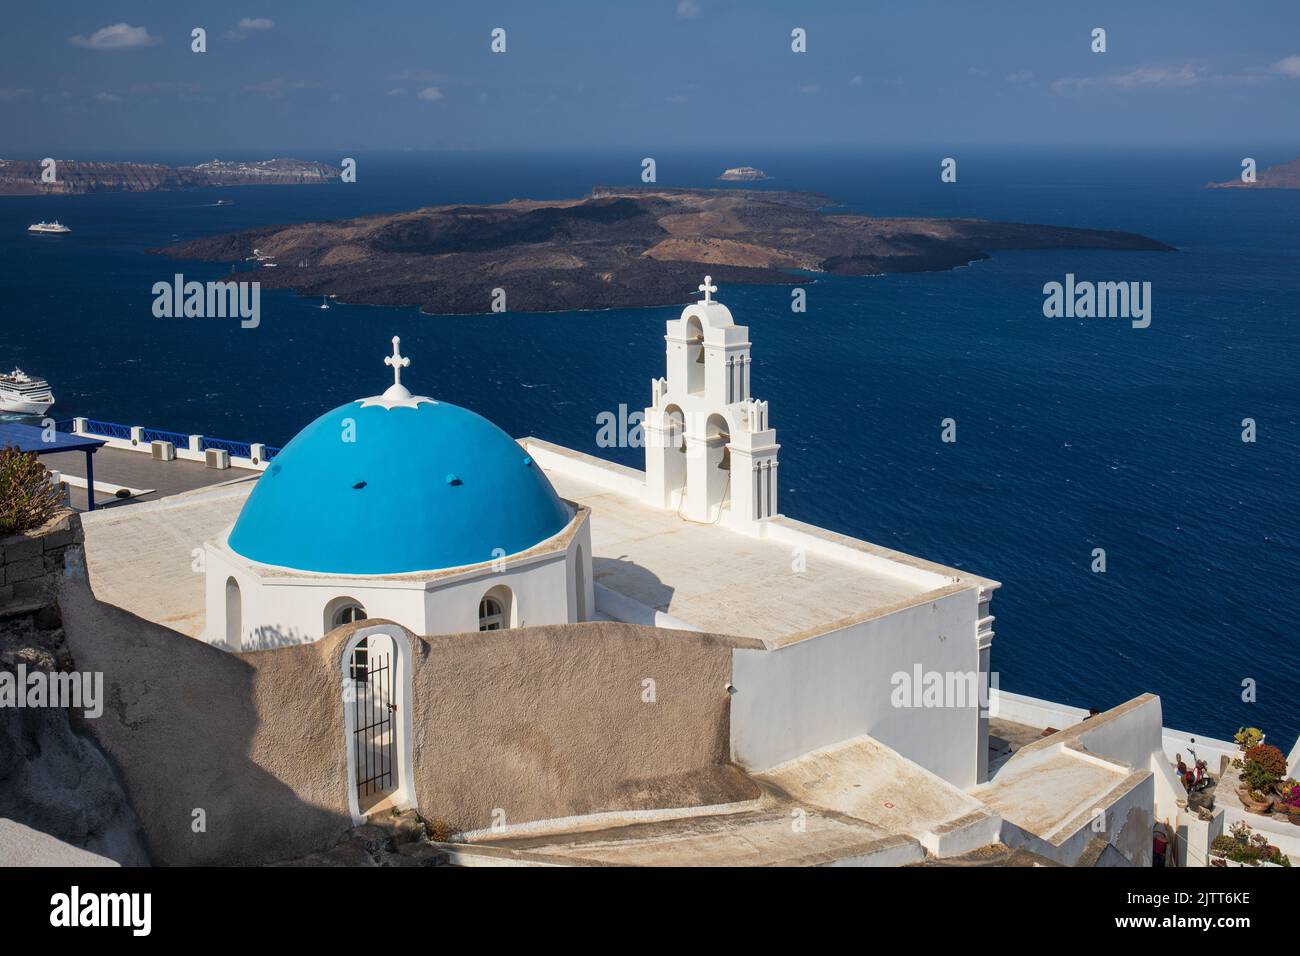 La Iglesia Católica de la Dormition - Tres campanas de Fira con su cúpula azul con vistas al mar Egeo y al volcán, Fira, isla de Santorini, Grecia Foto de stock